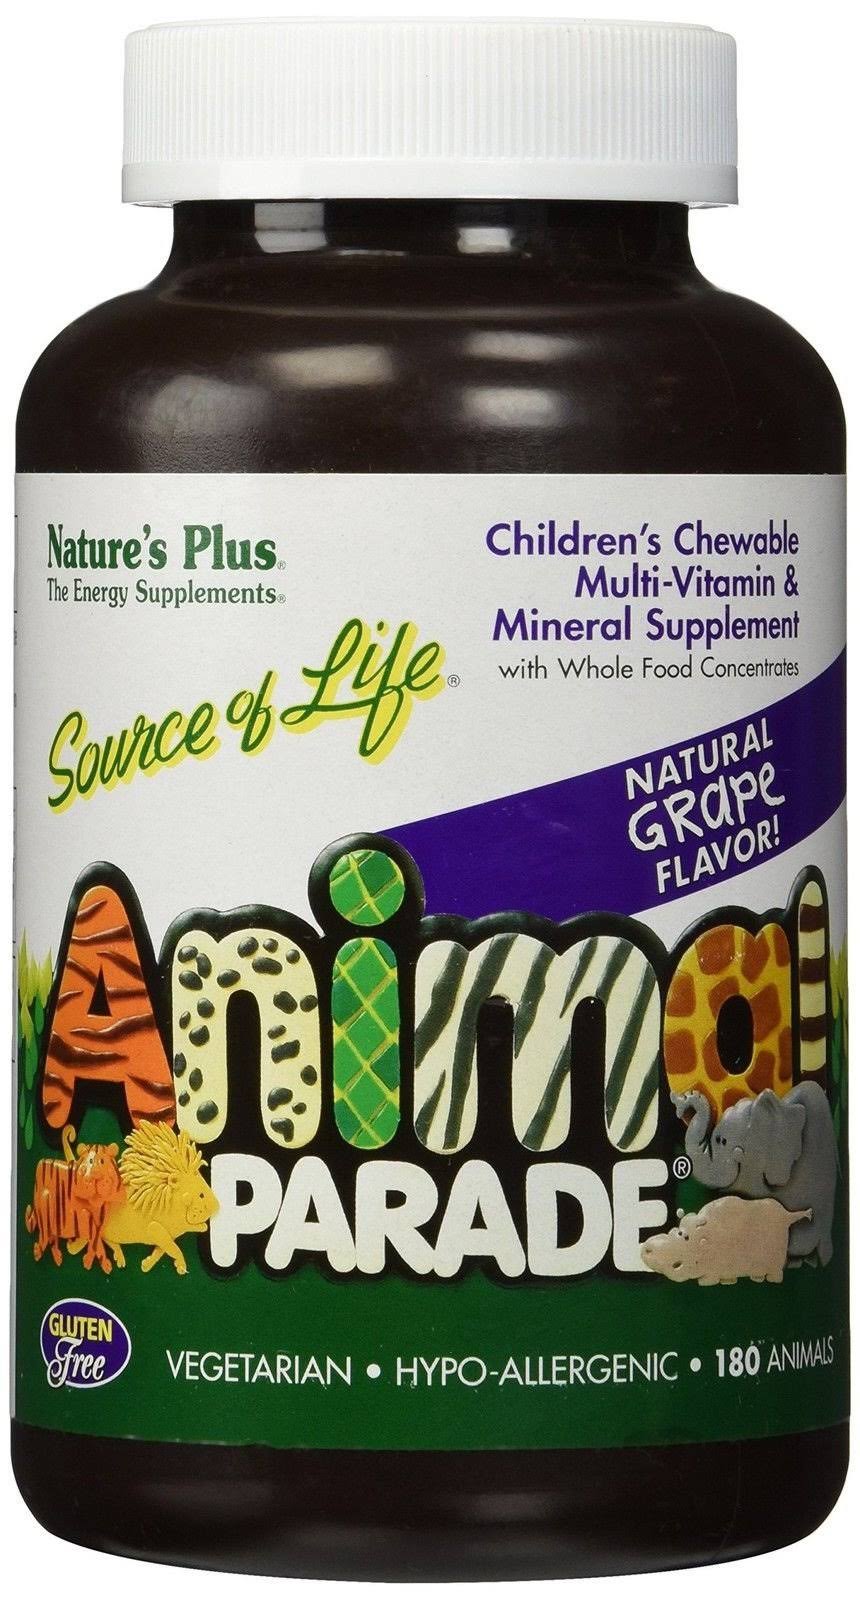 Nature's Plus Animal Parade Children's Chewable Multi-vitamin - 180 Animals